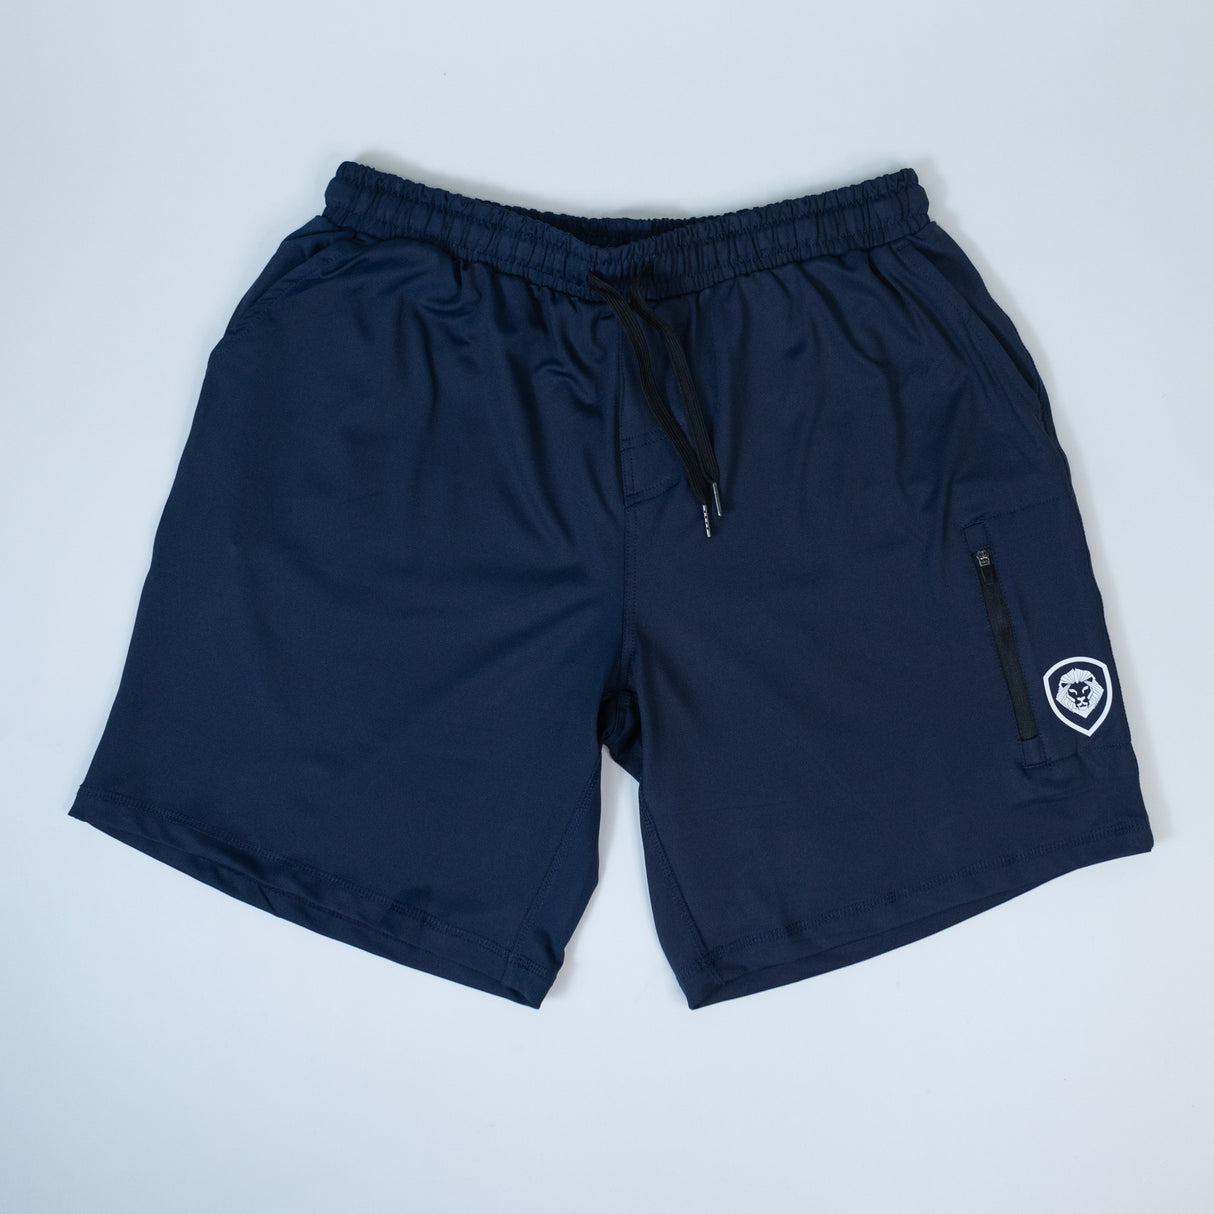 VT Athletic Shorts - Navy